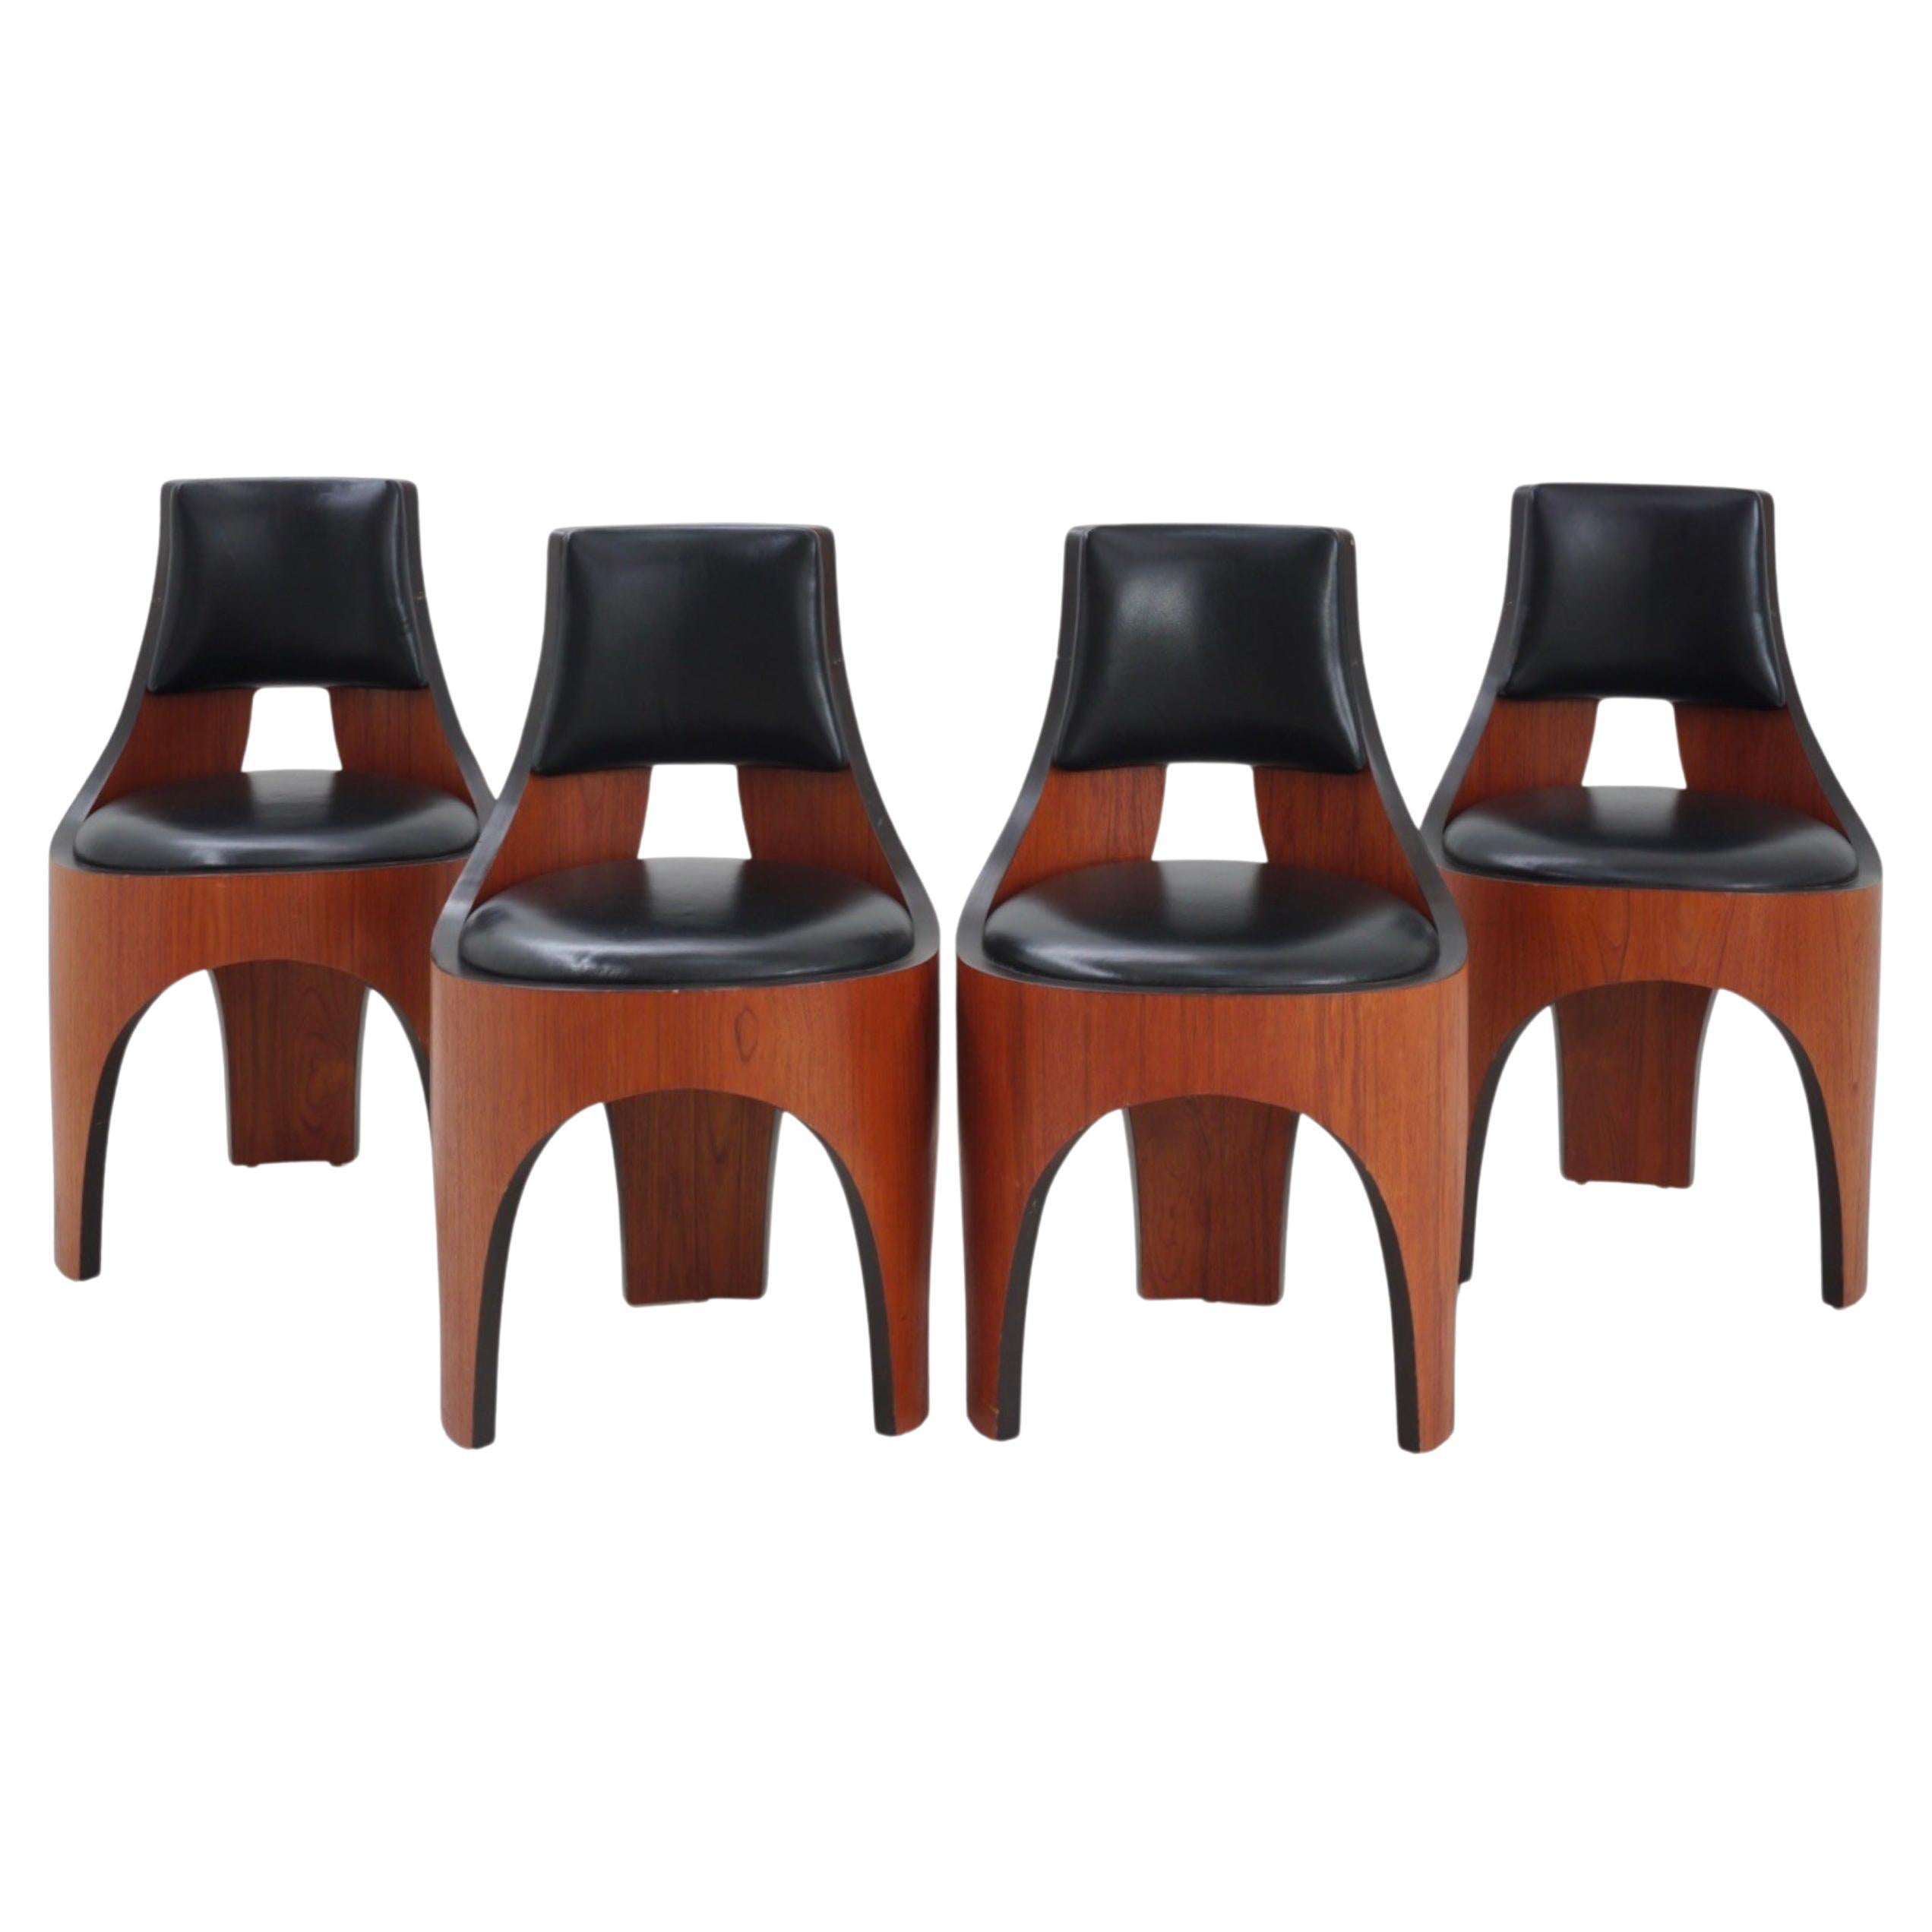 Ensemble de 4 chaises Cylindra d'Henry P. Glass, 1966